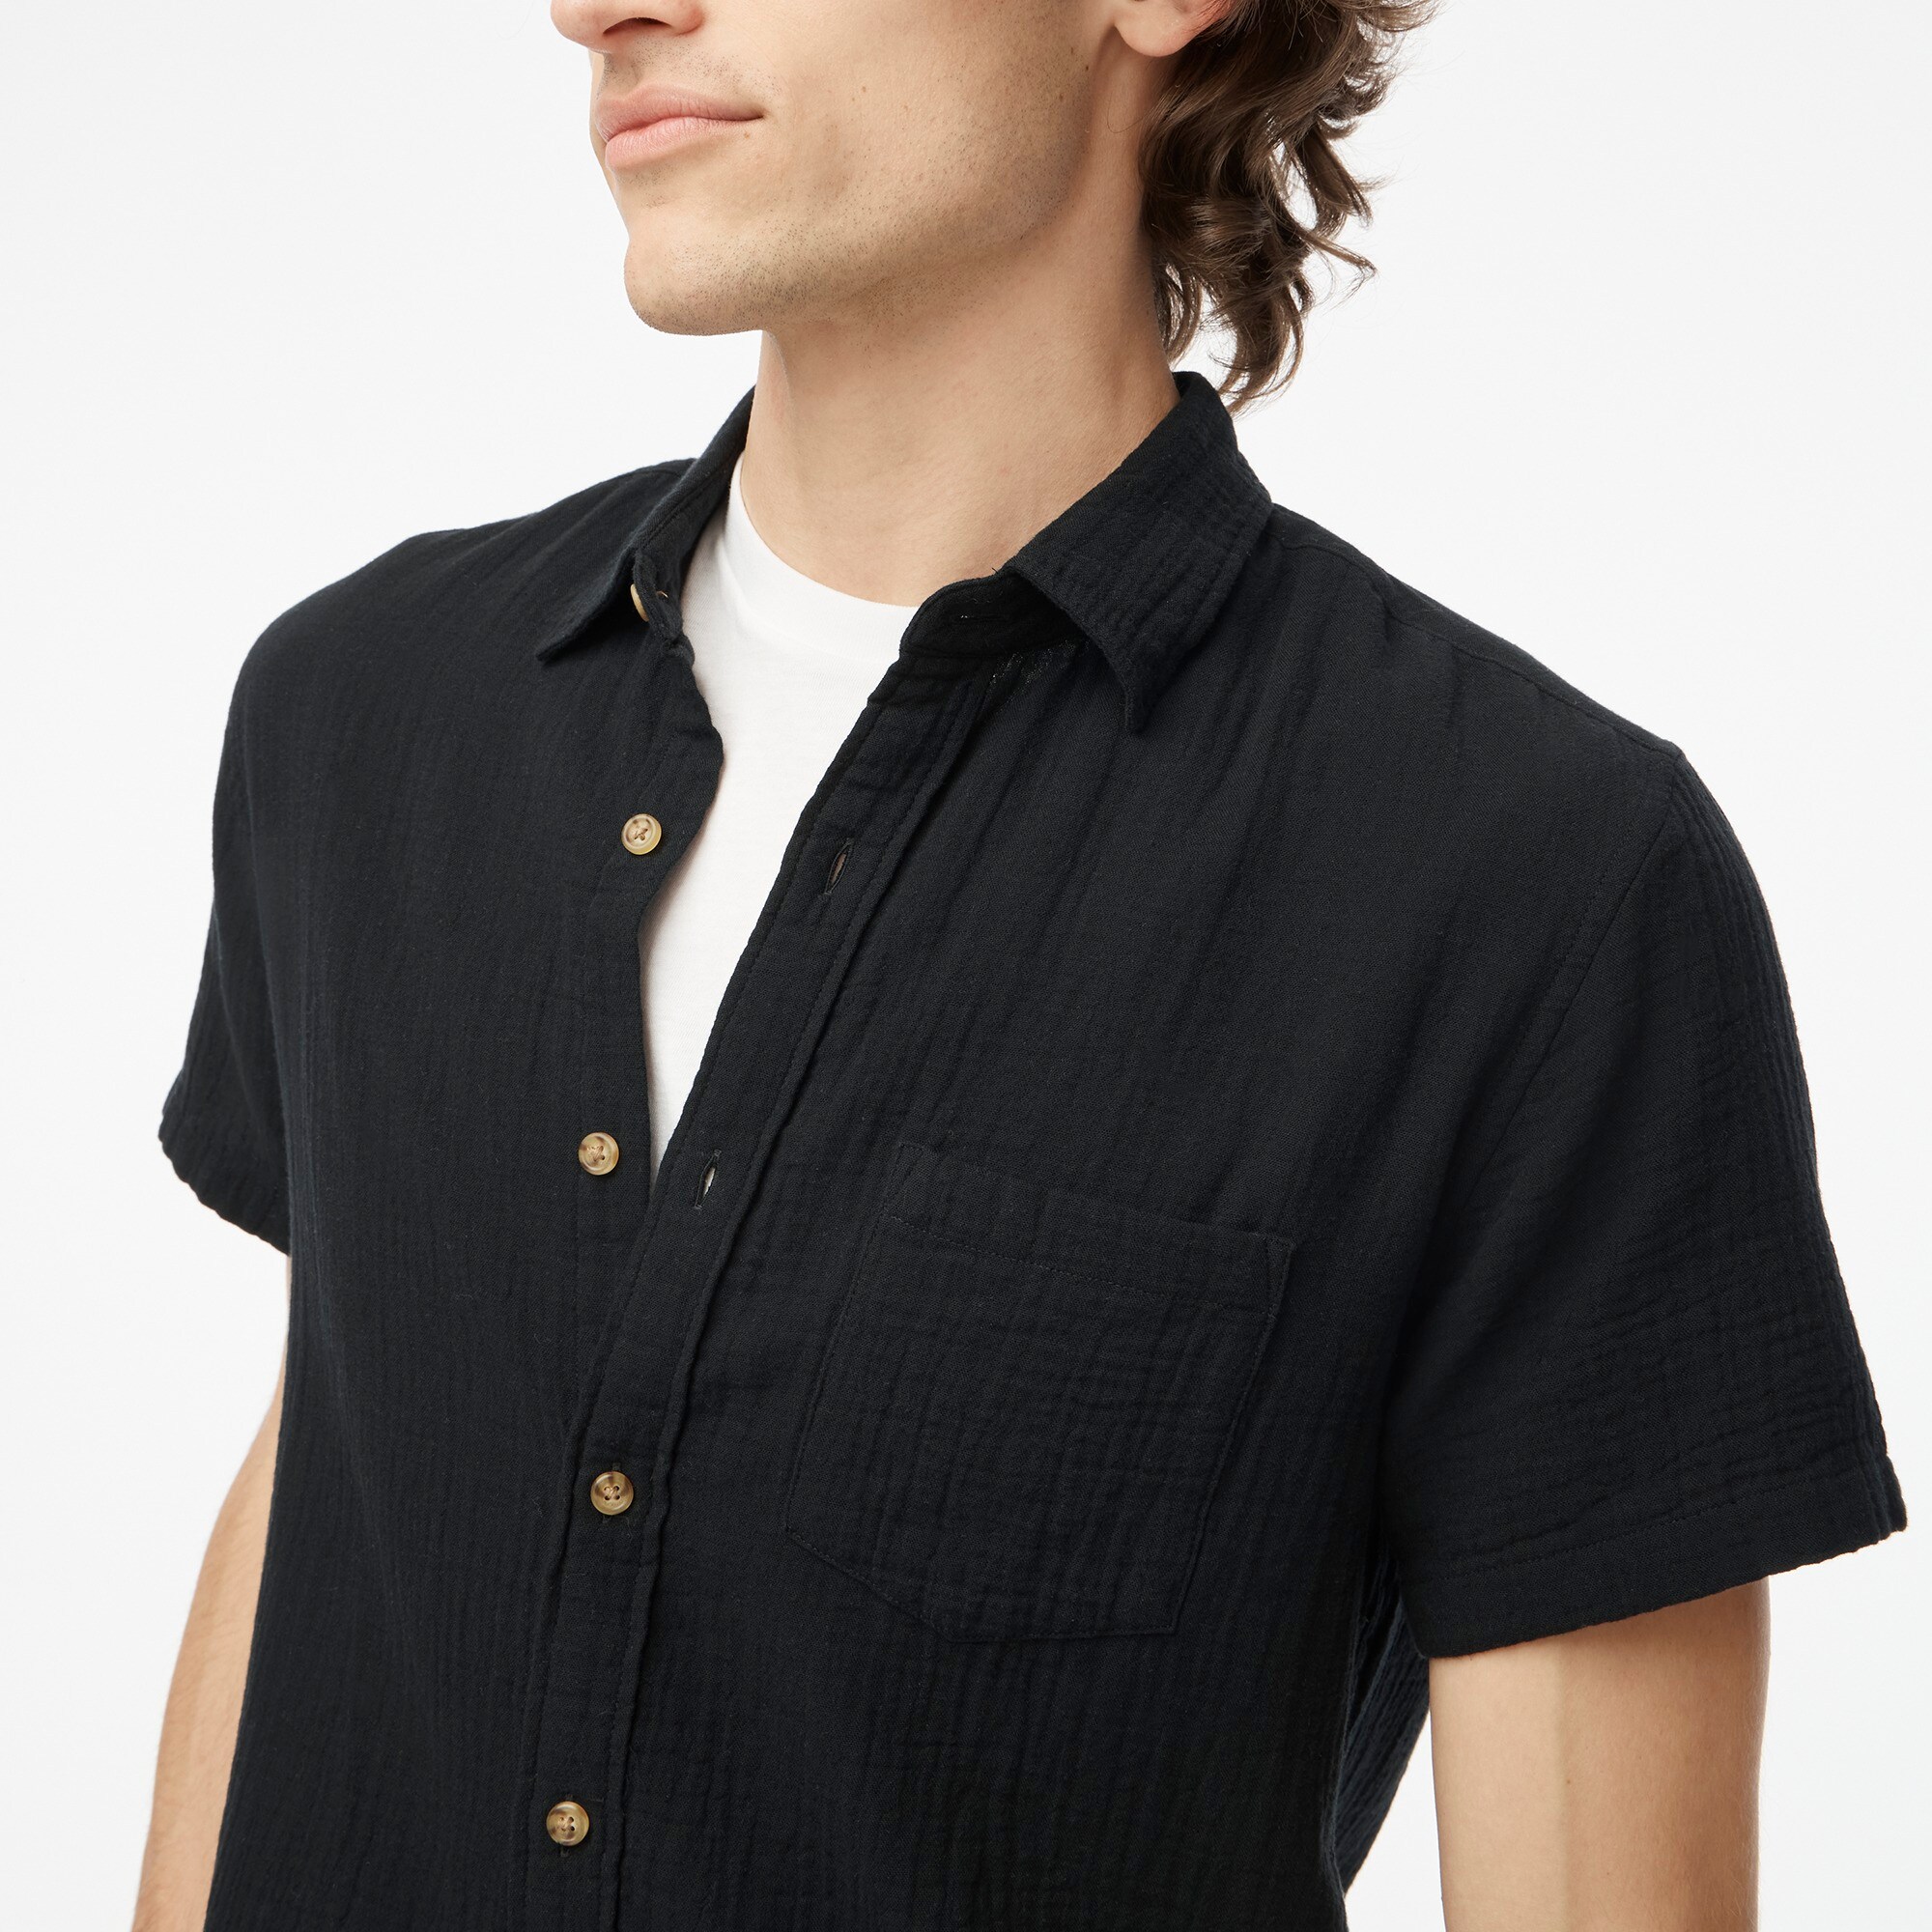 mens Short-sleeve gauze shirt